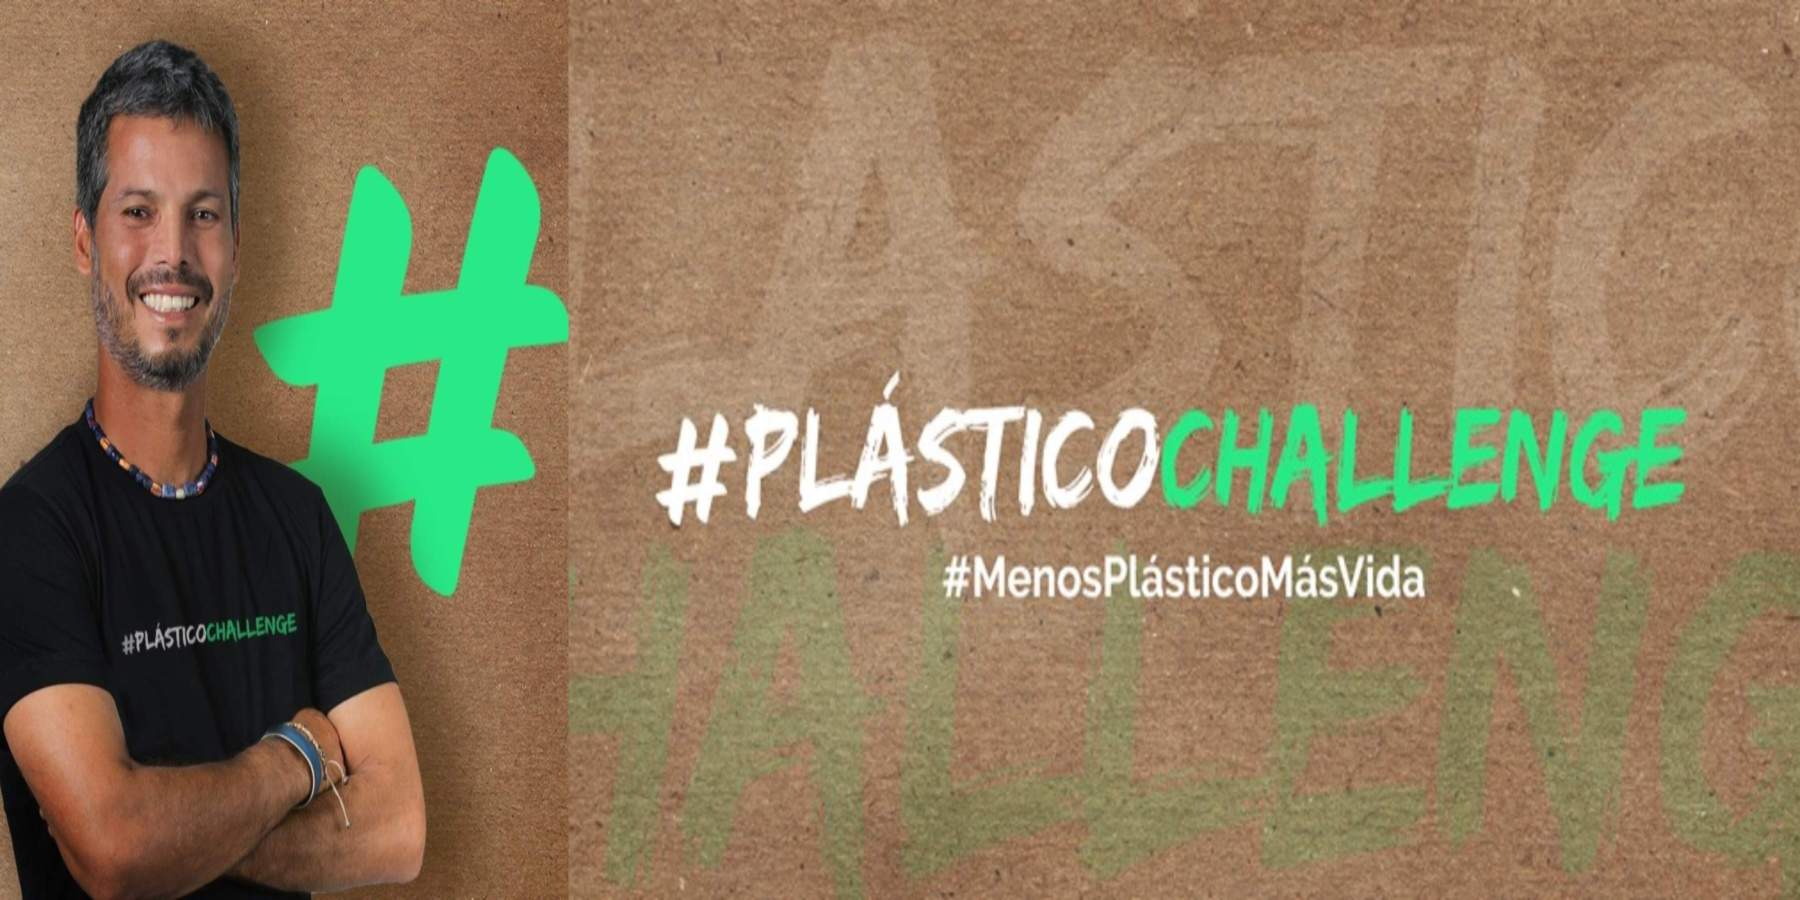 Pancho Cavero promueve la reducción de plástico